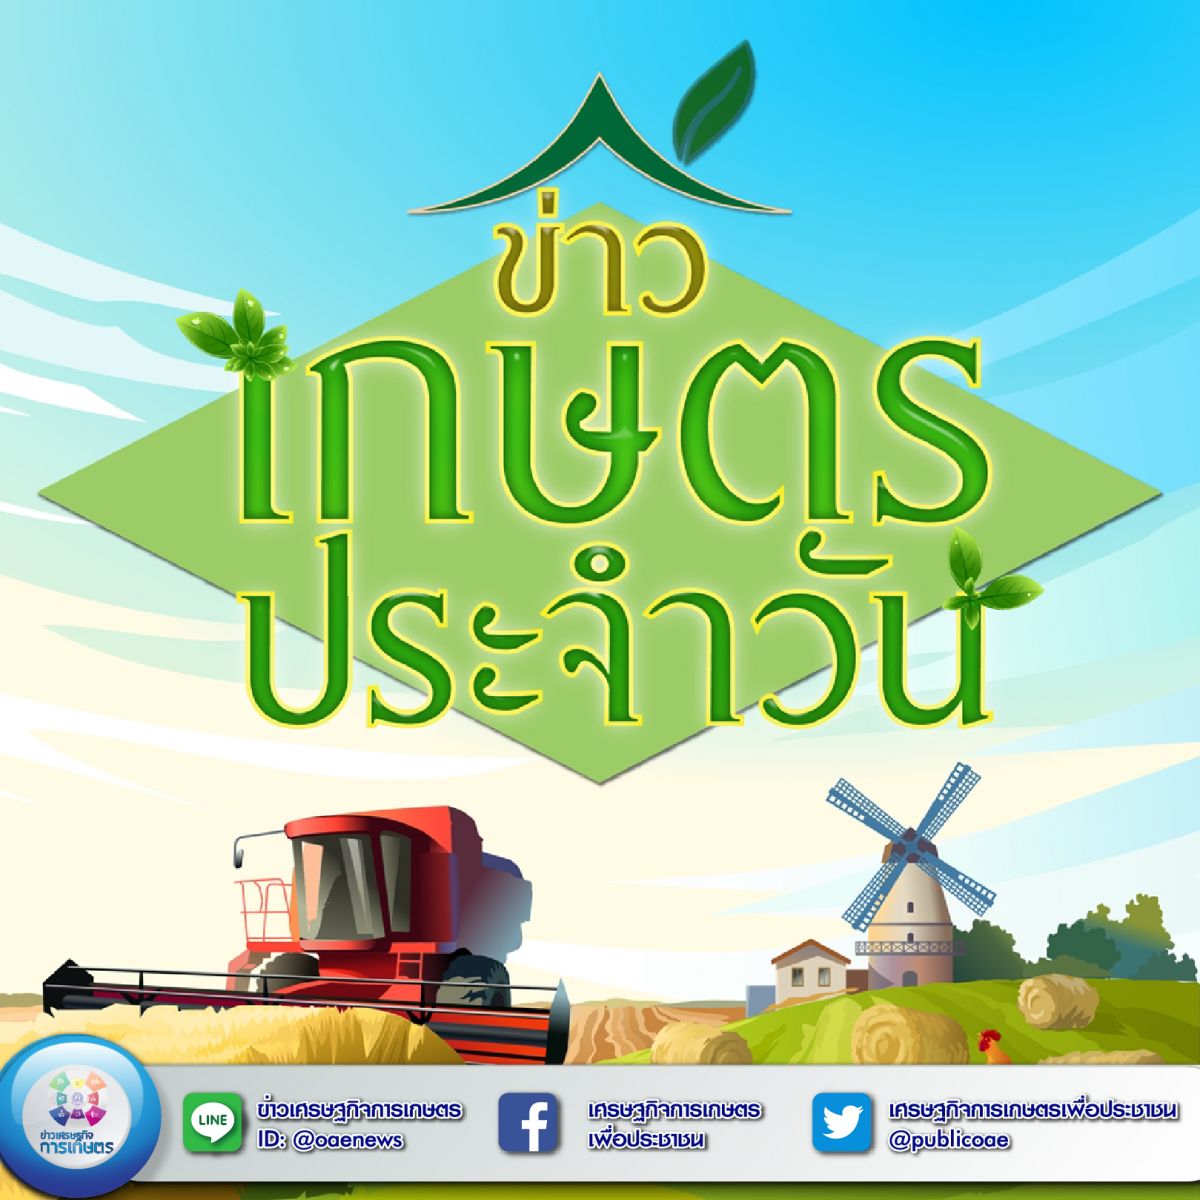 สรุปหัวข้อข่าวด้านการเกษตรที่สำคัญ นสพ.ประจำวันที่ 29 กรกฎาคม 2563 